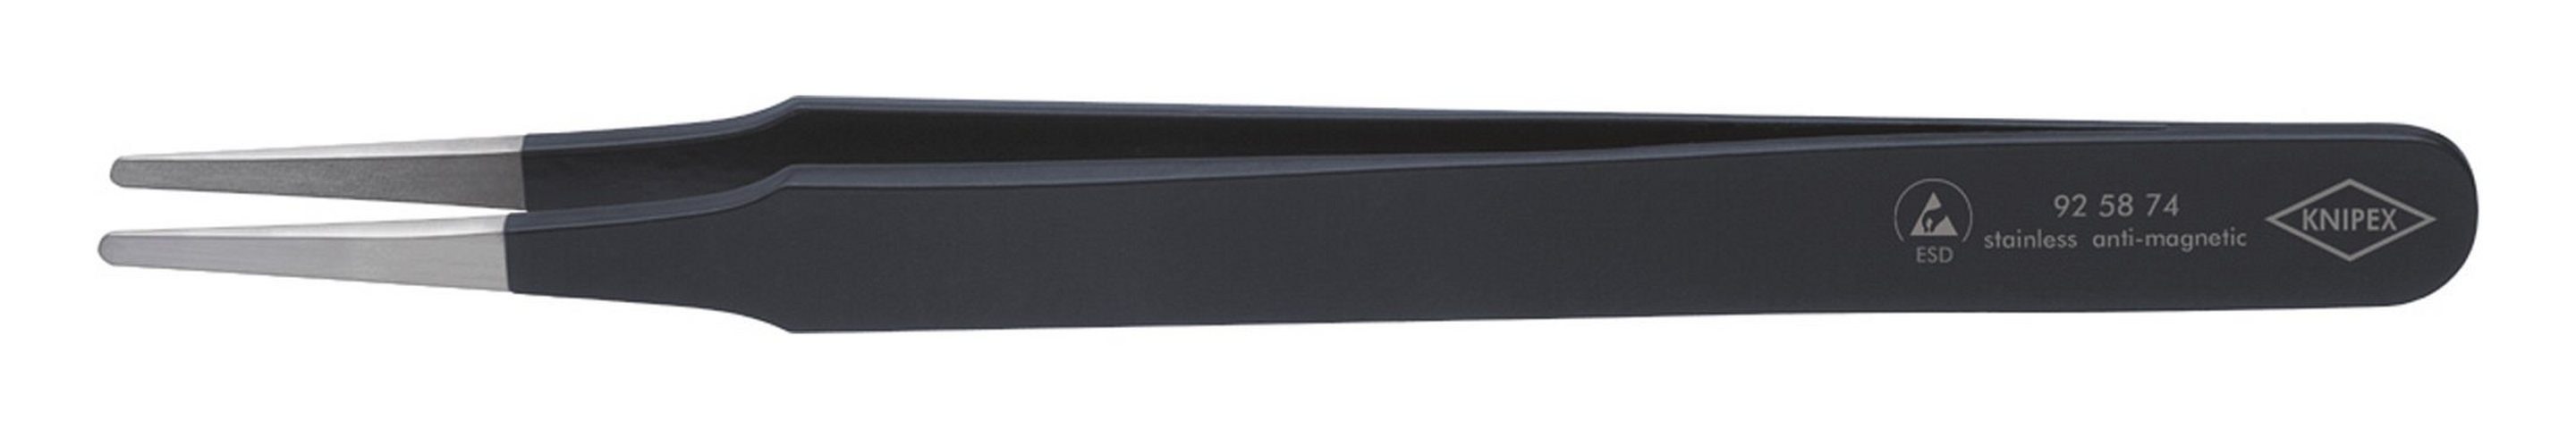 schwarz Knipex rund Pinzette, mm 2 120 mm ESD